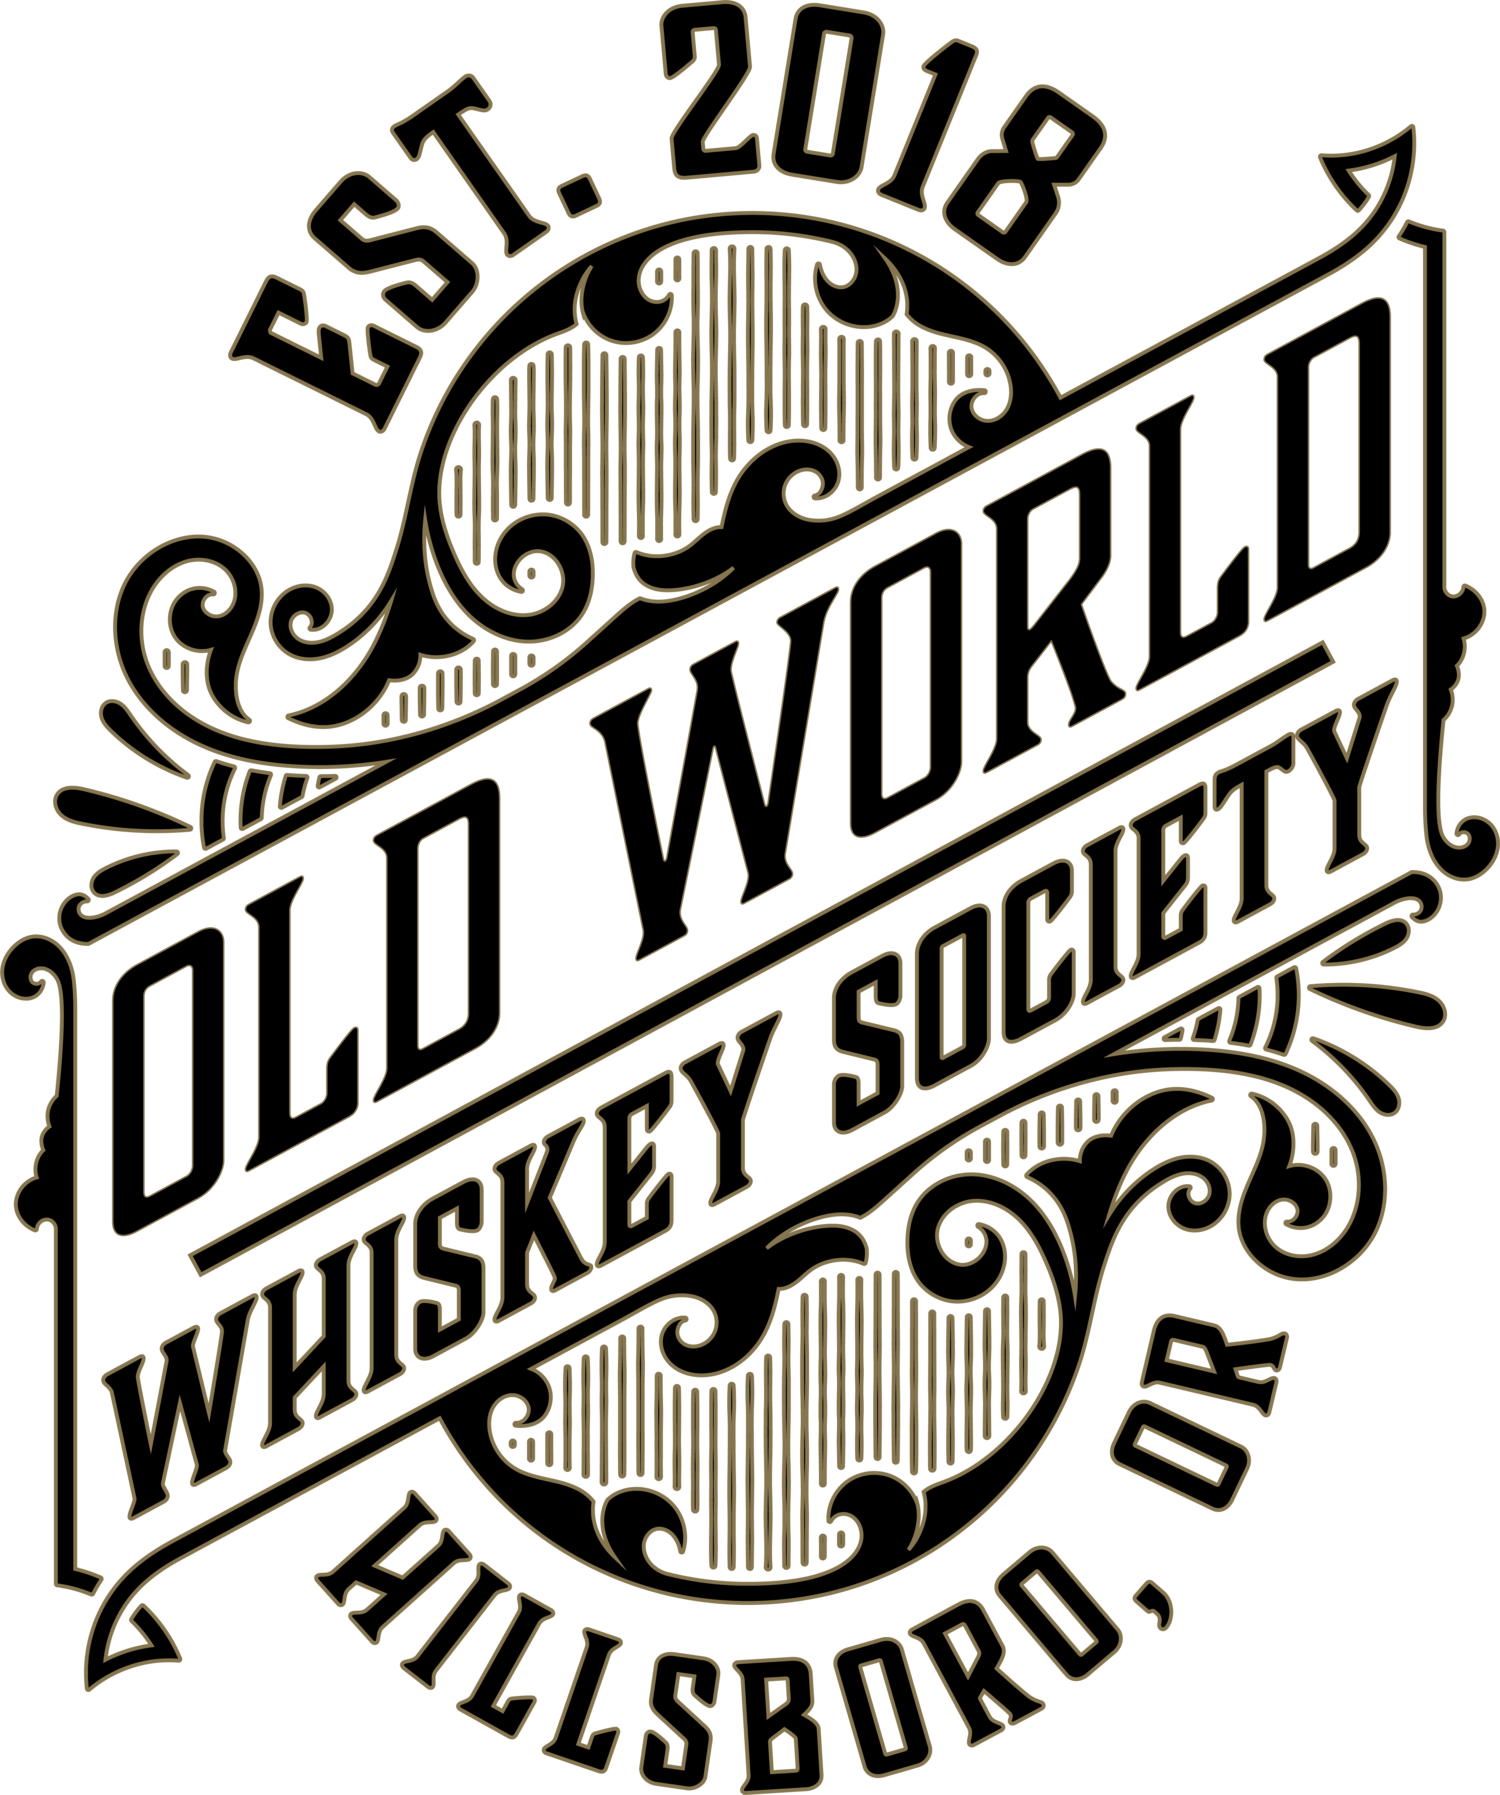 Old World Whiskey Society